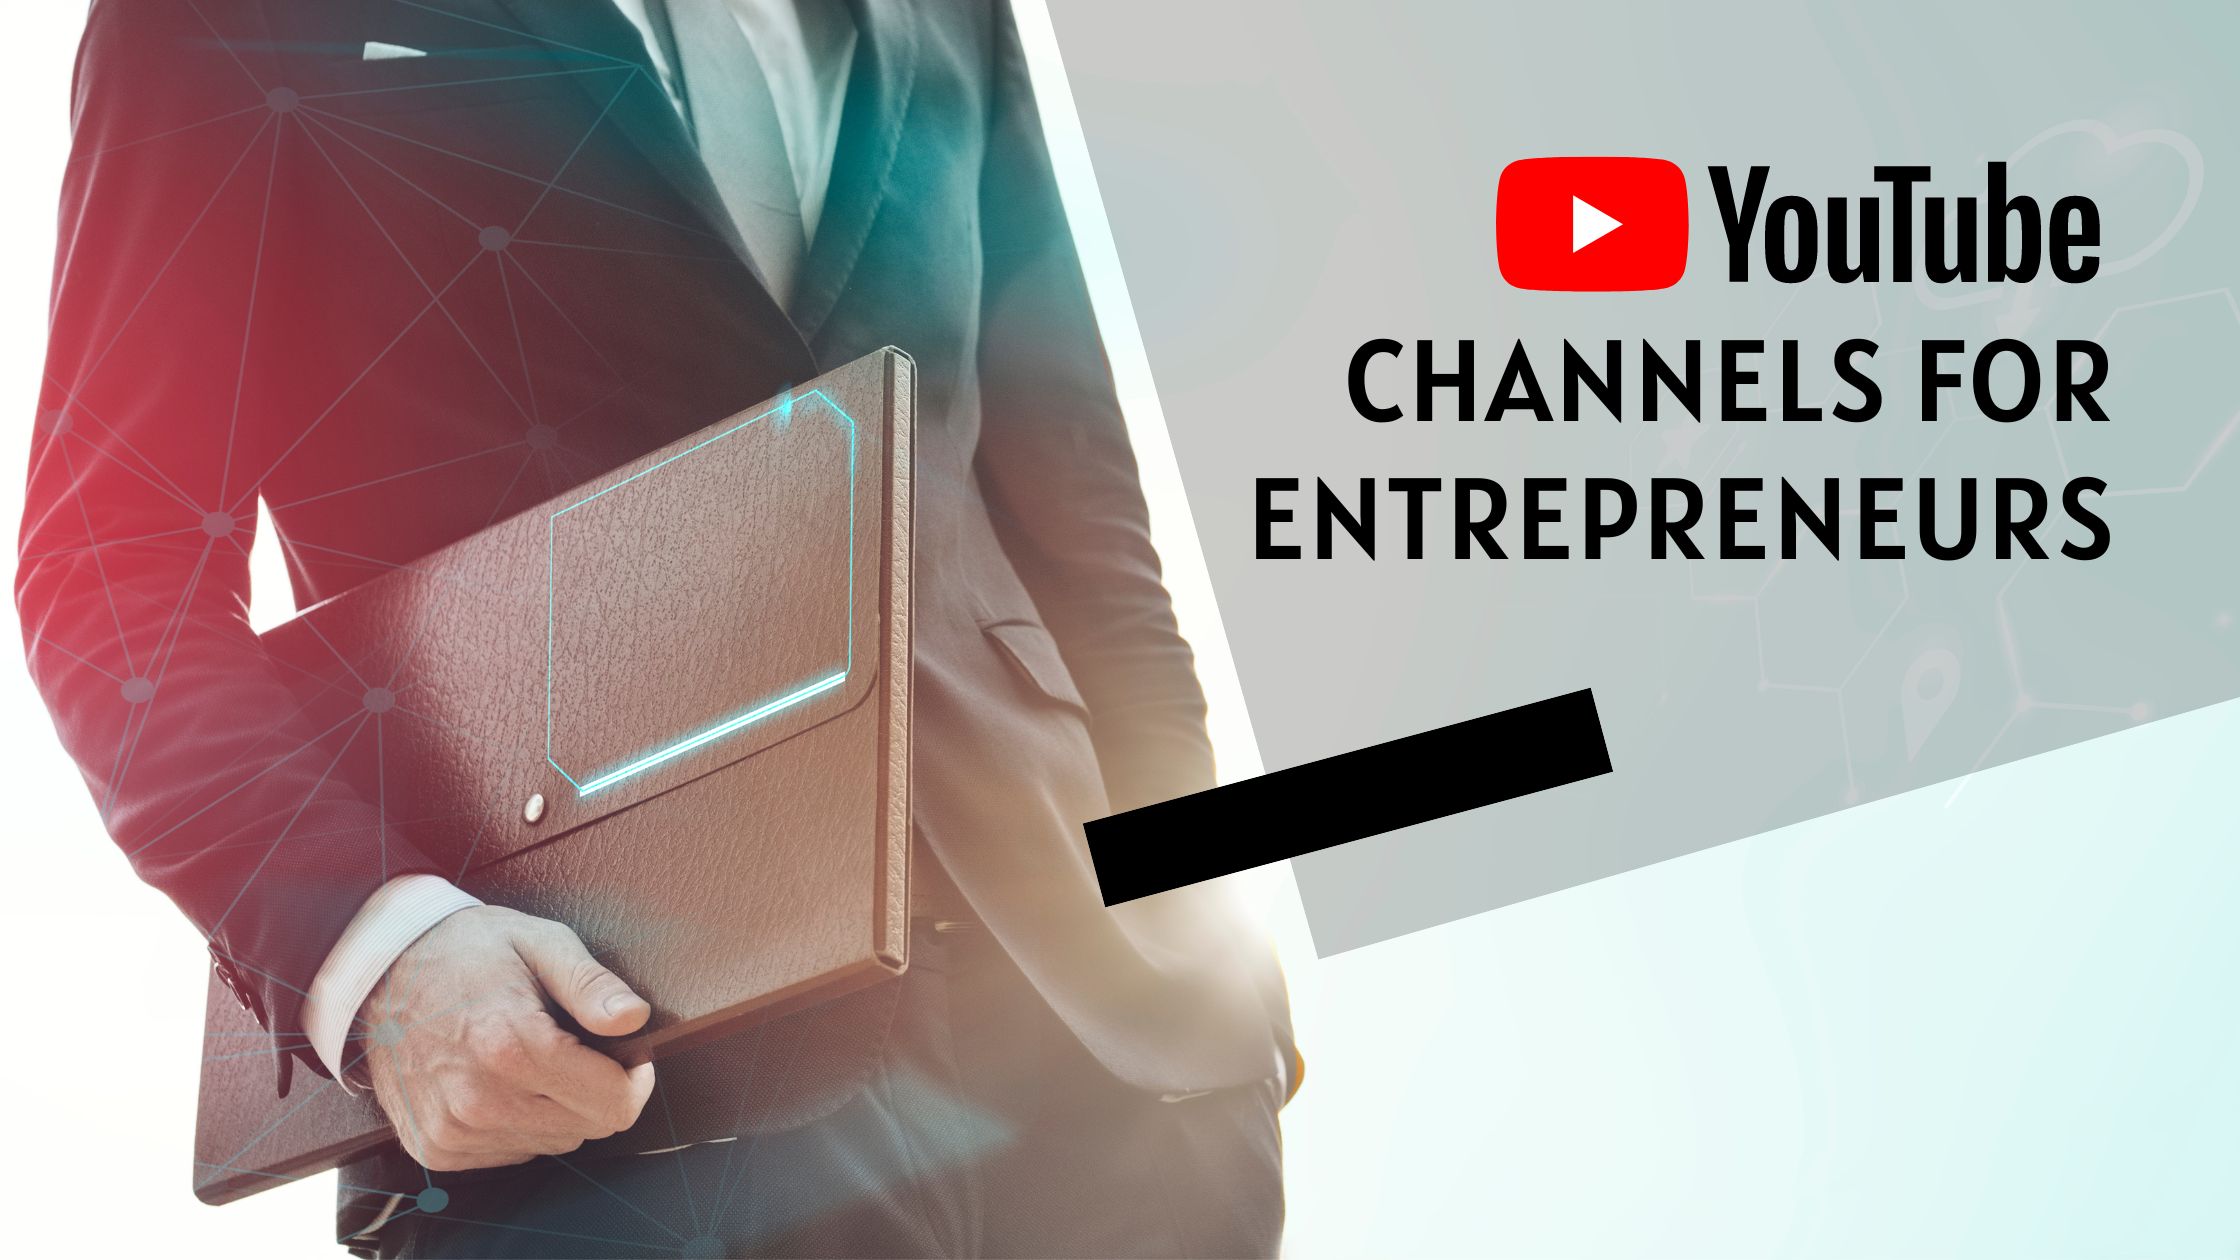 YouTube channels for entrepreneurs